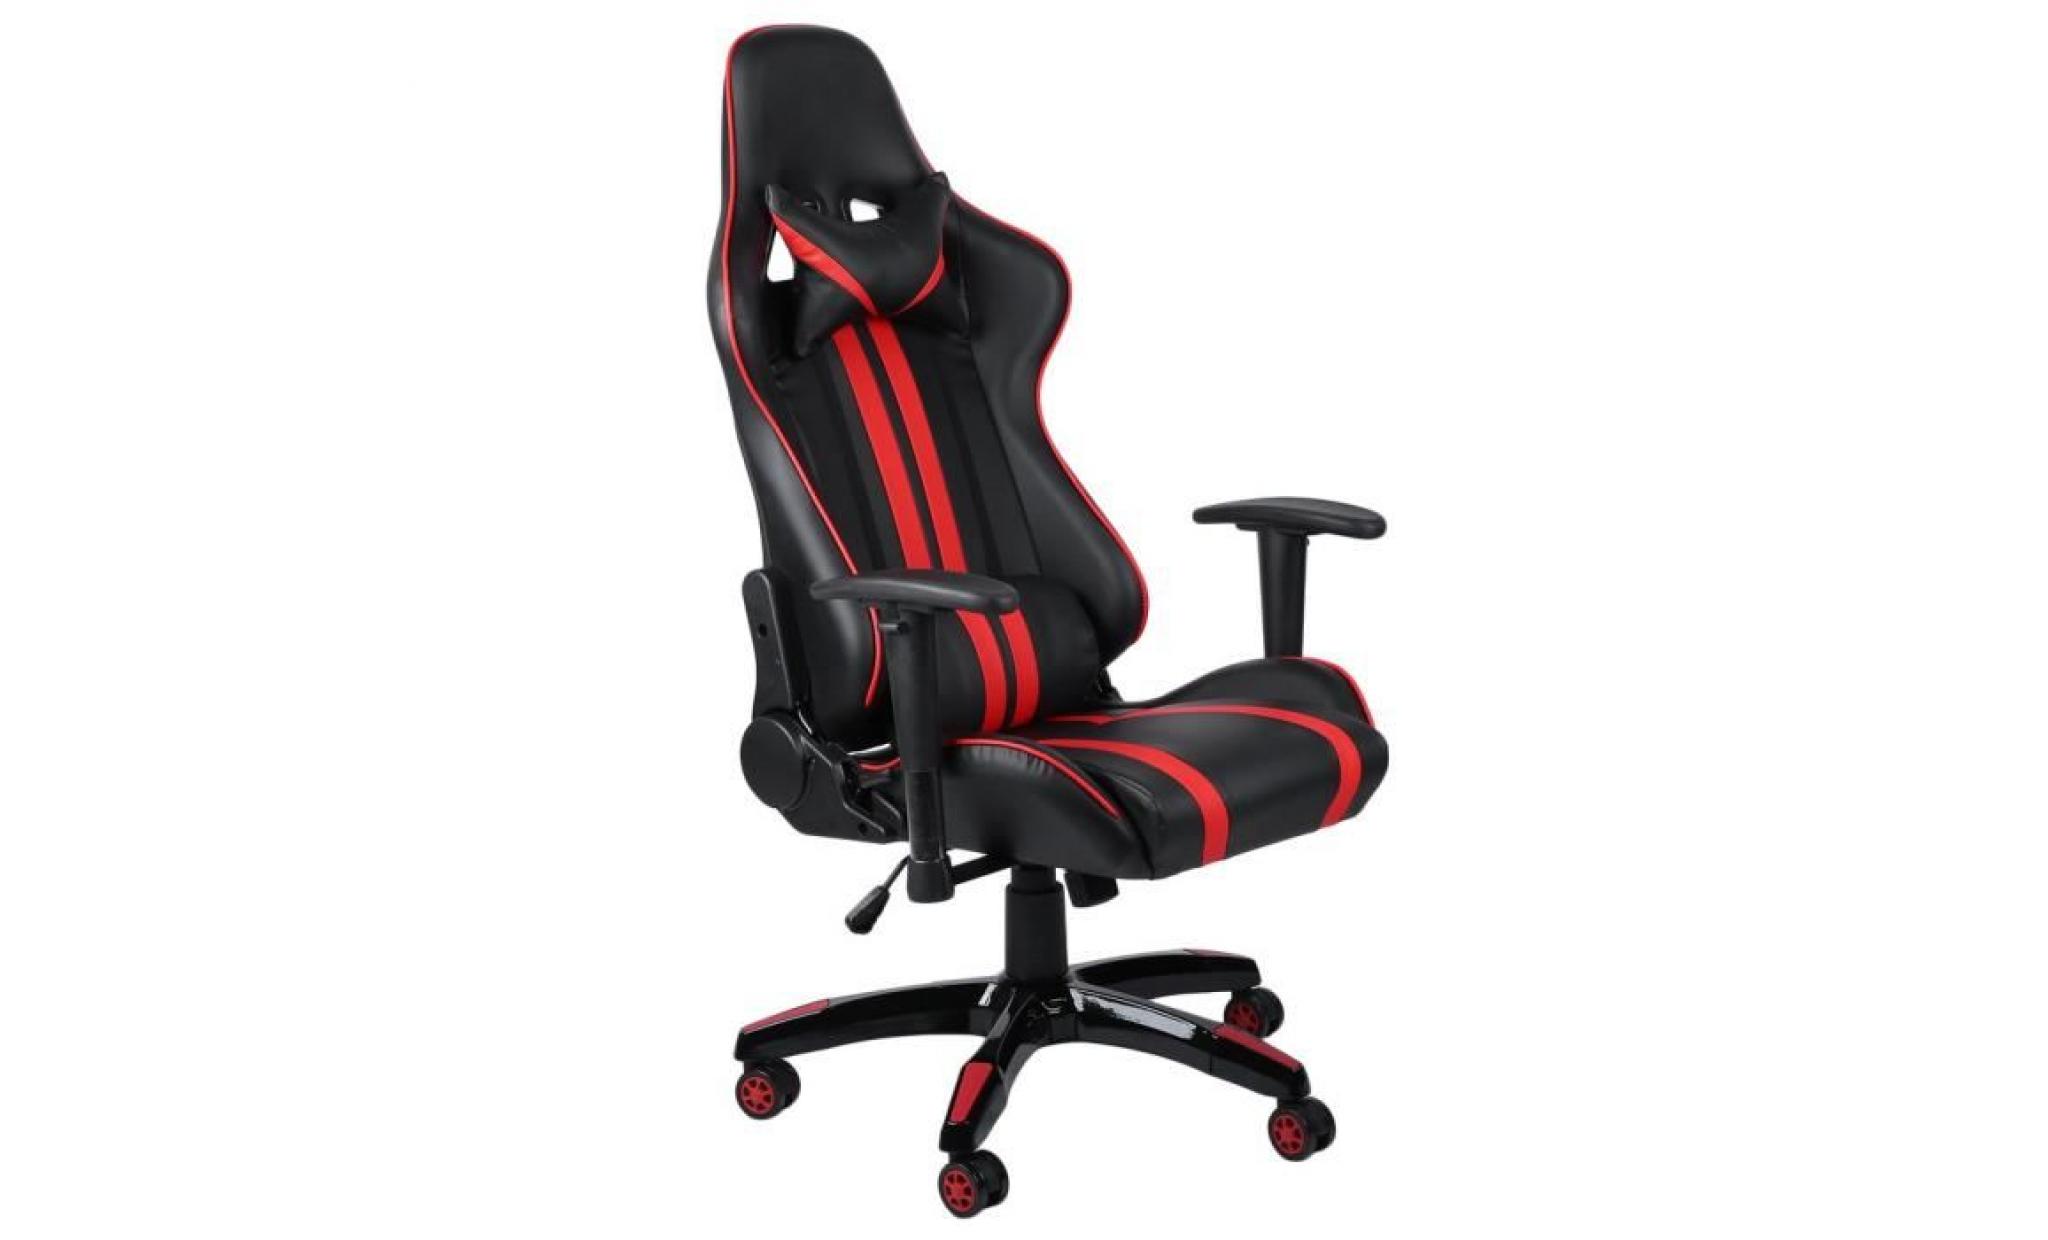 leshp® 2018 nouveau comfortable fauteuil gamer chaise de jeu chaise racing ergonomique rouge et noir